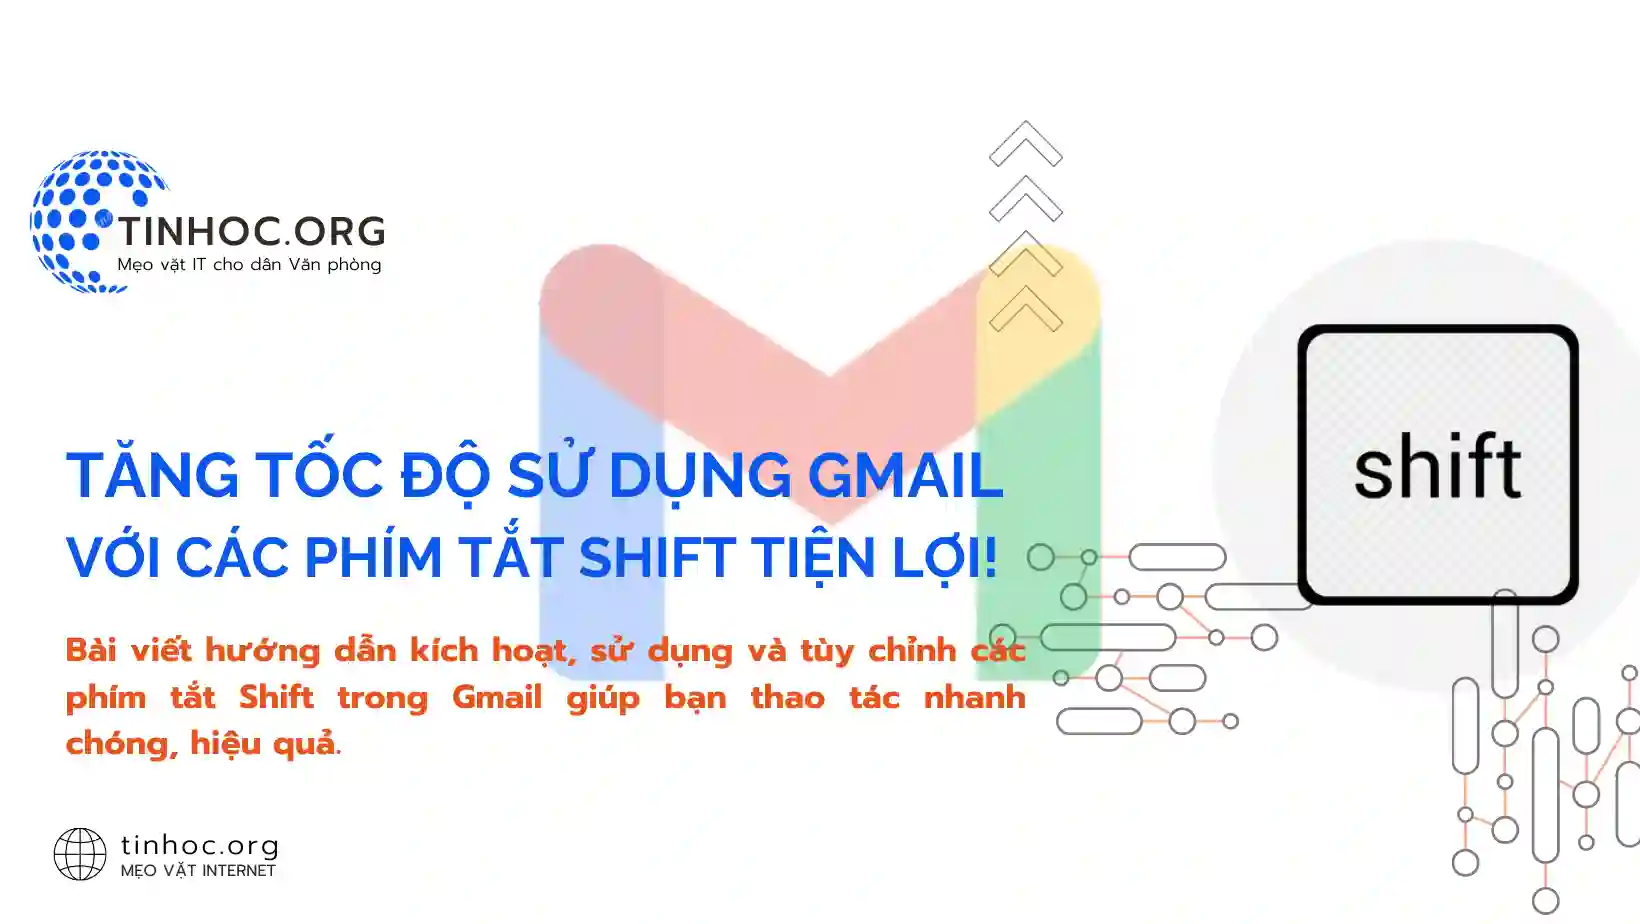 Bài viết hướng dẫn kích hoạt, sử dụng và tùy chỉnh các phím tắt Shift trong Gmail giúp bạn thao tác nhanh chóng, hiệu quả.